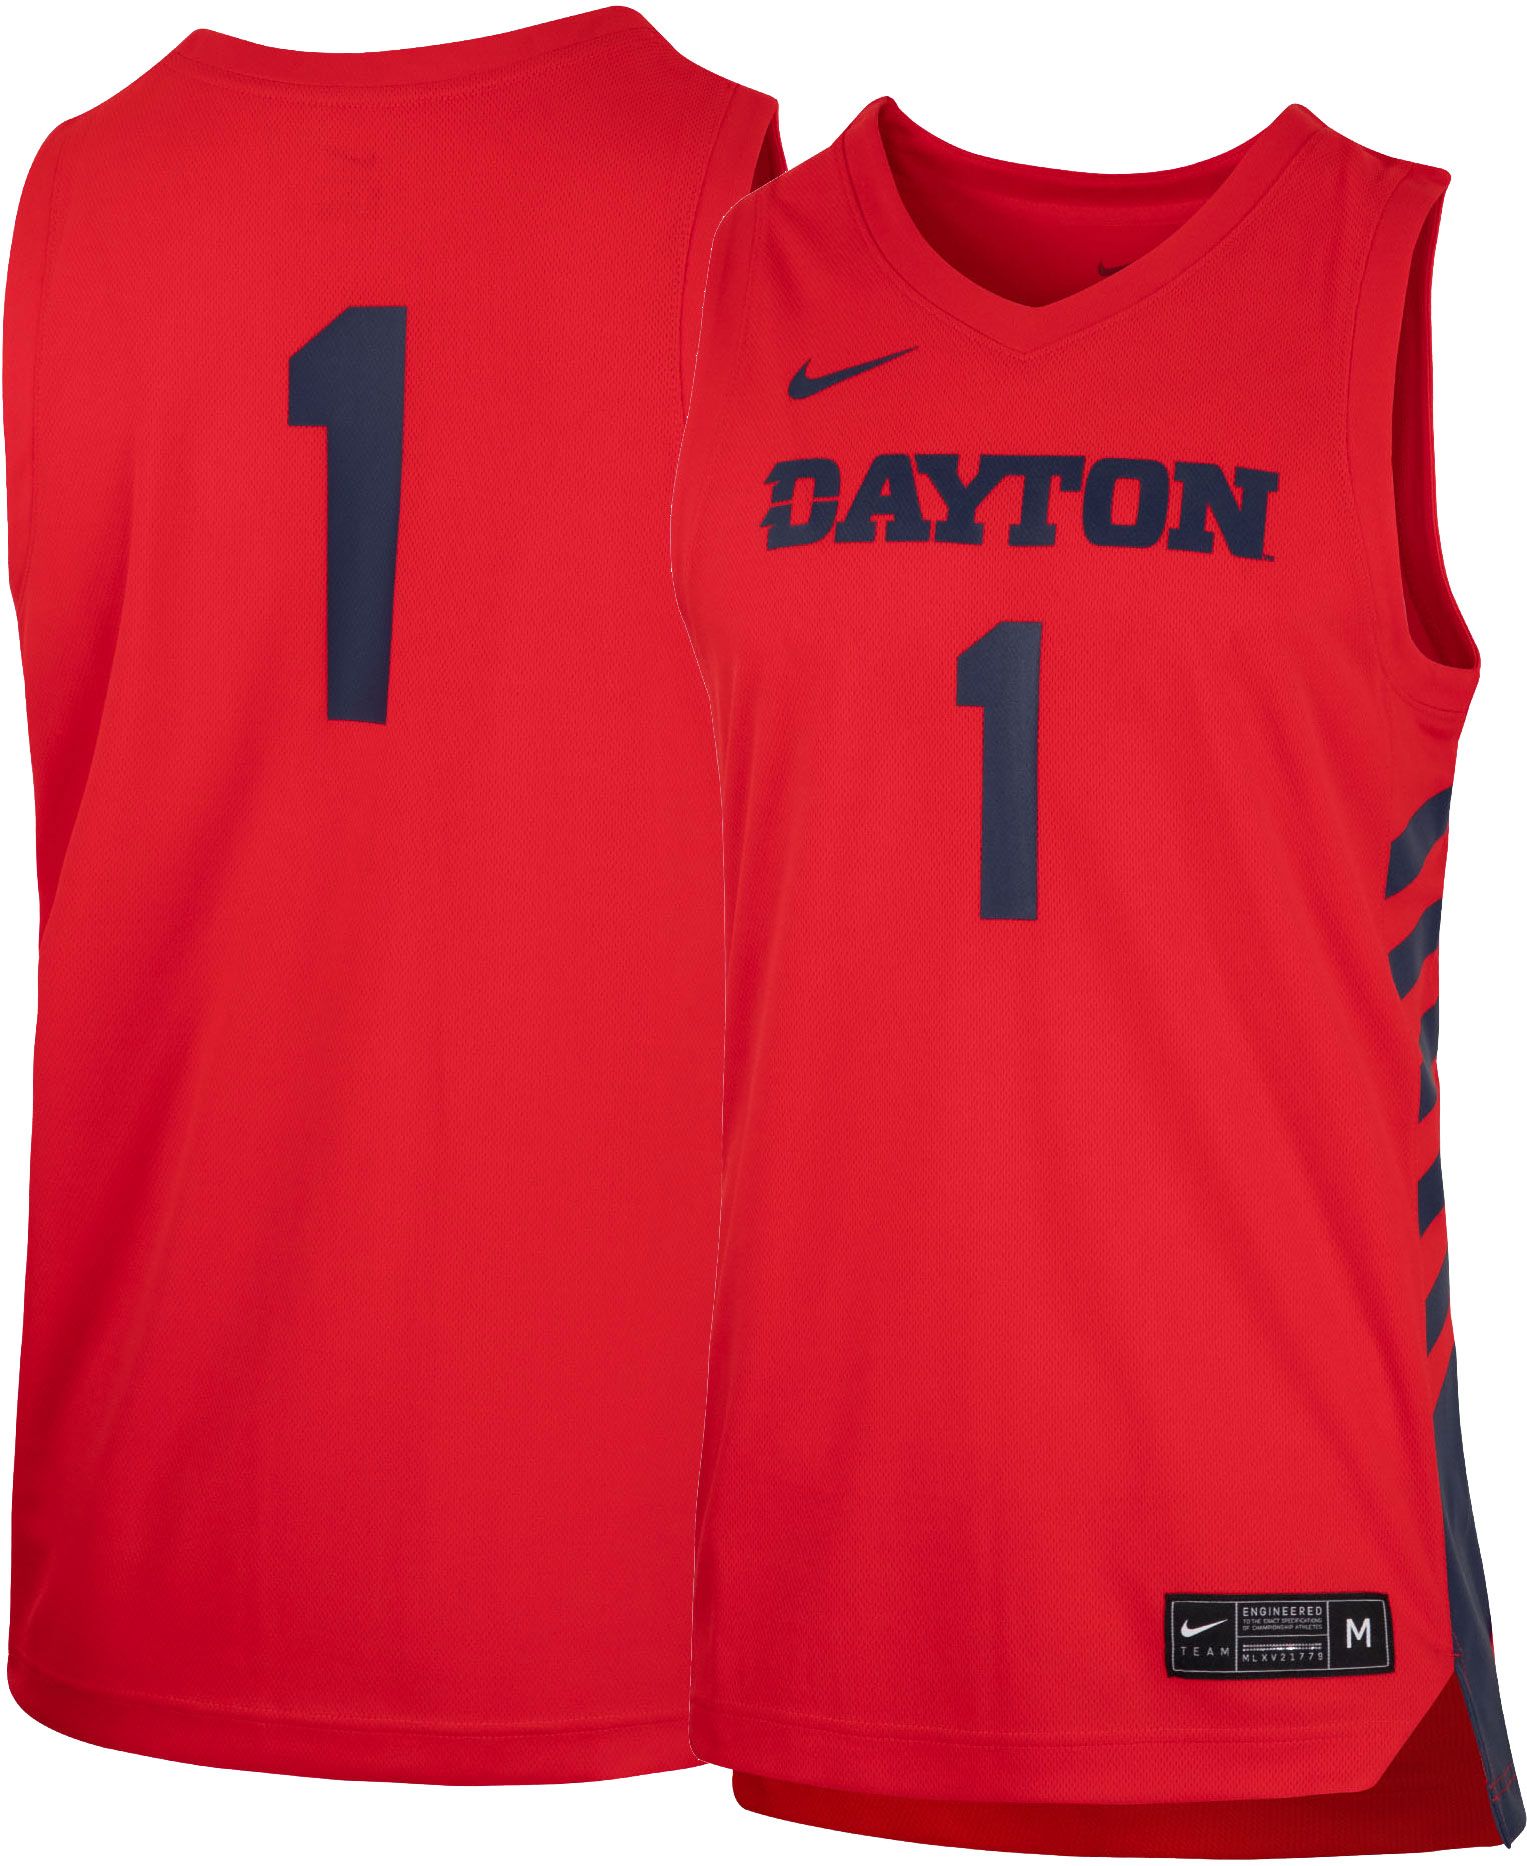 dayton basketball jersey